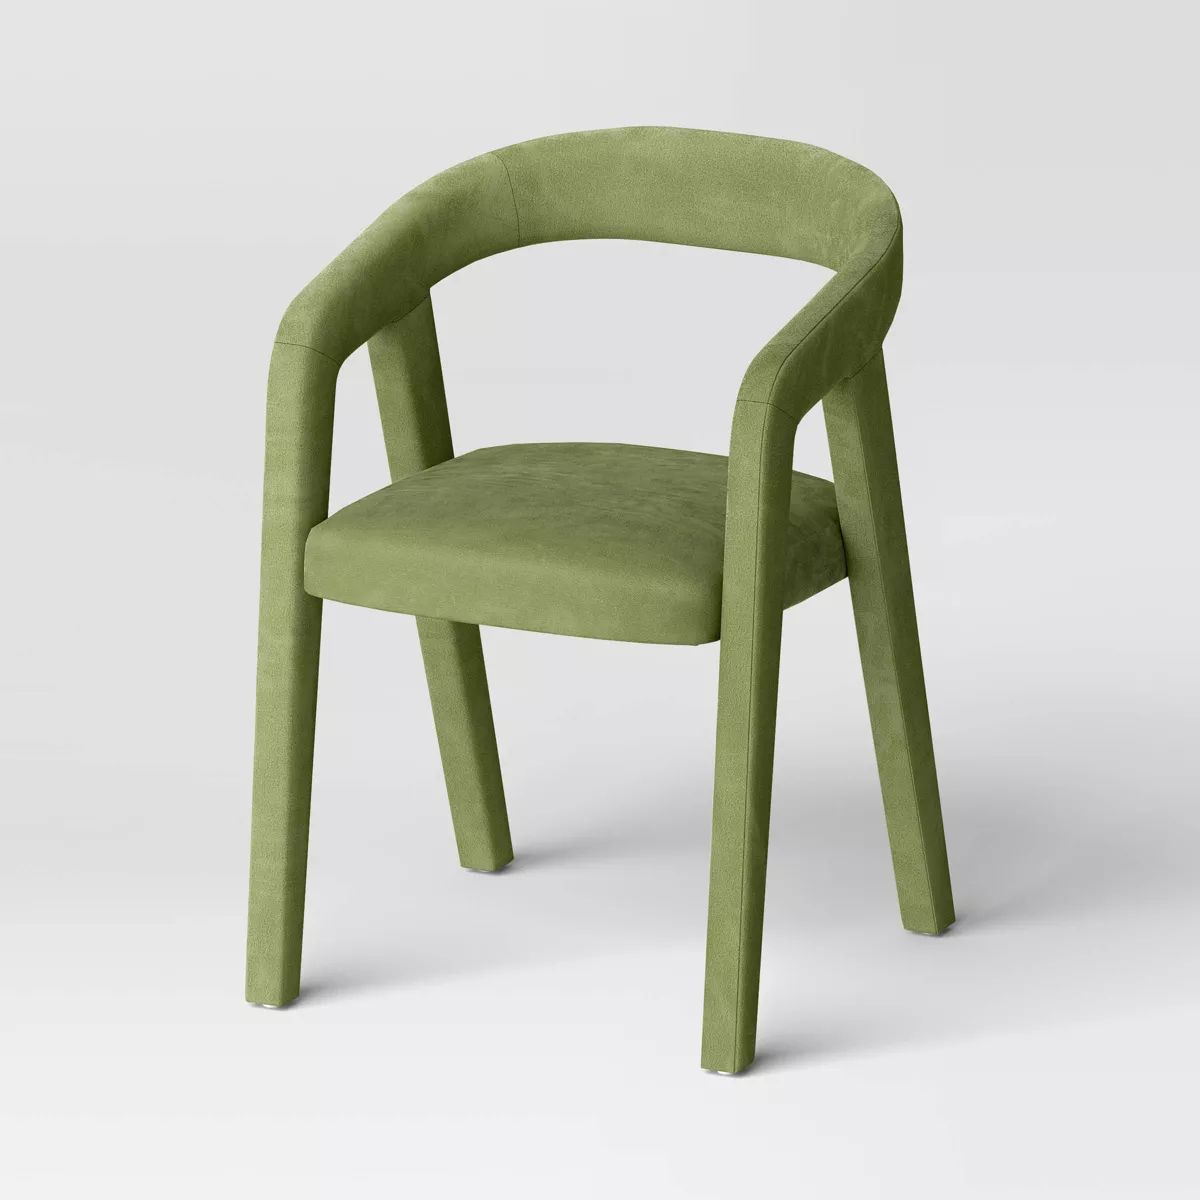 Lana Curved Back Upholstered Dining Chair Olive Green Velvet - Threshold™ | Target